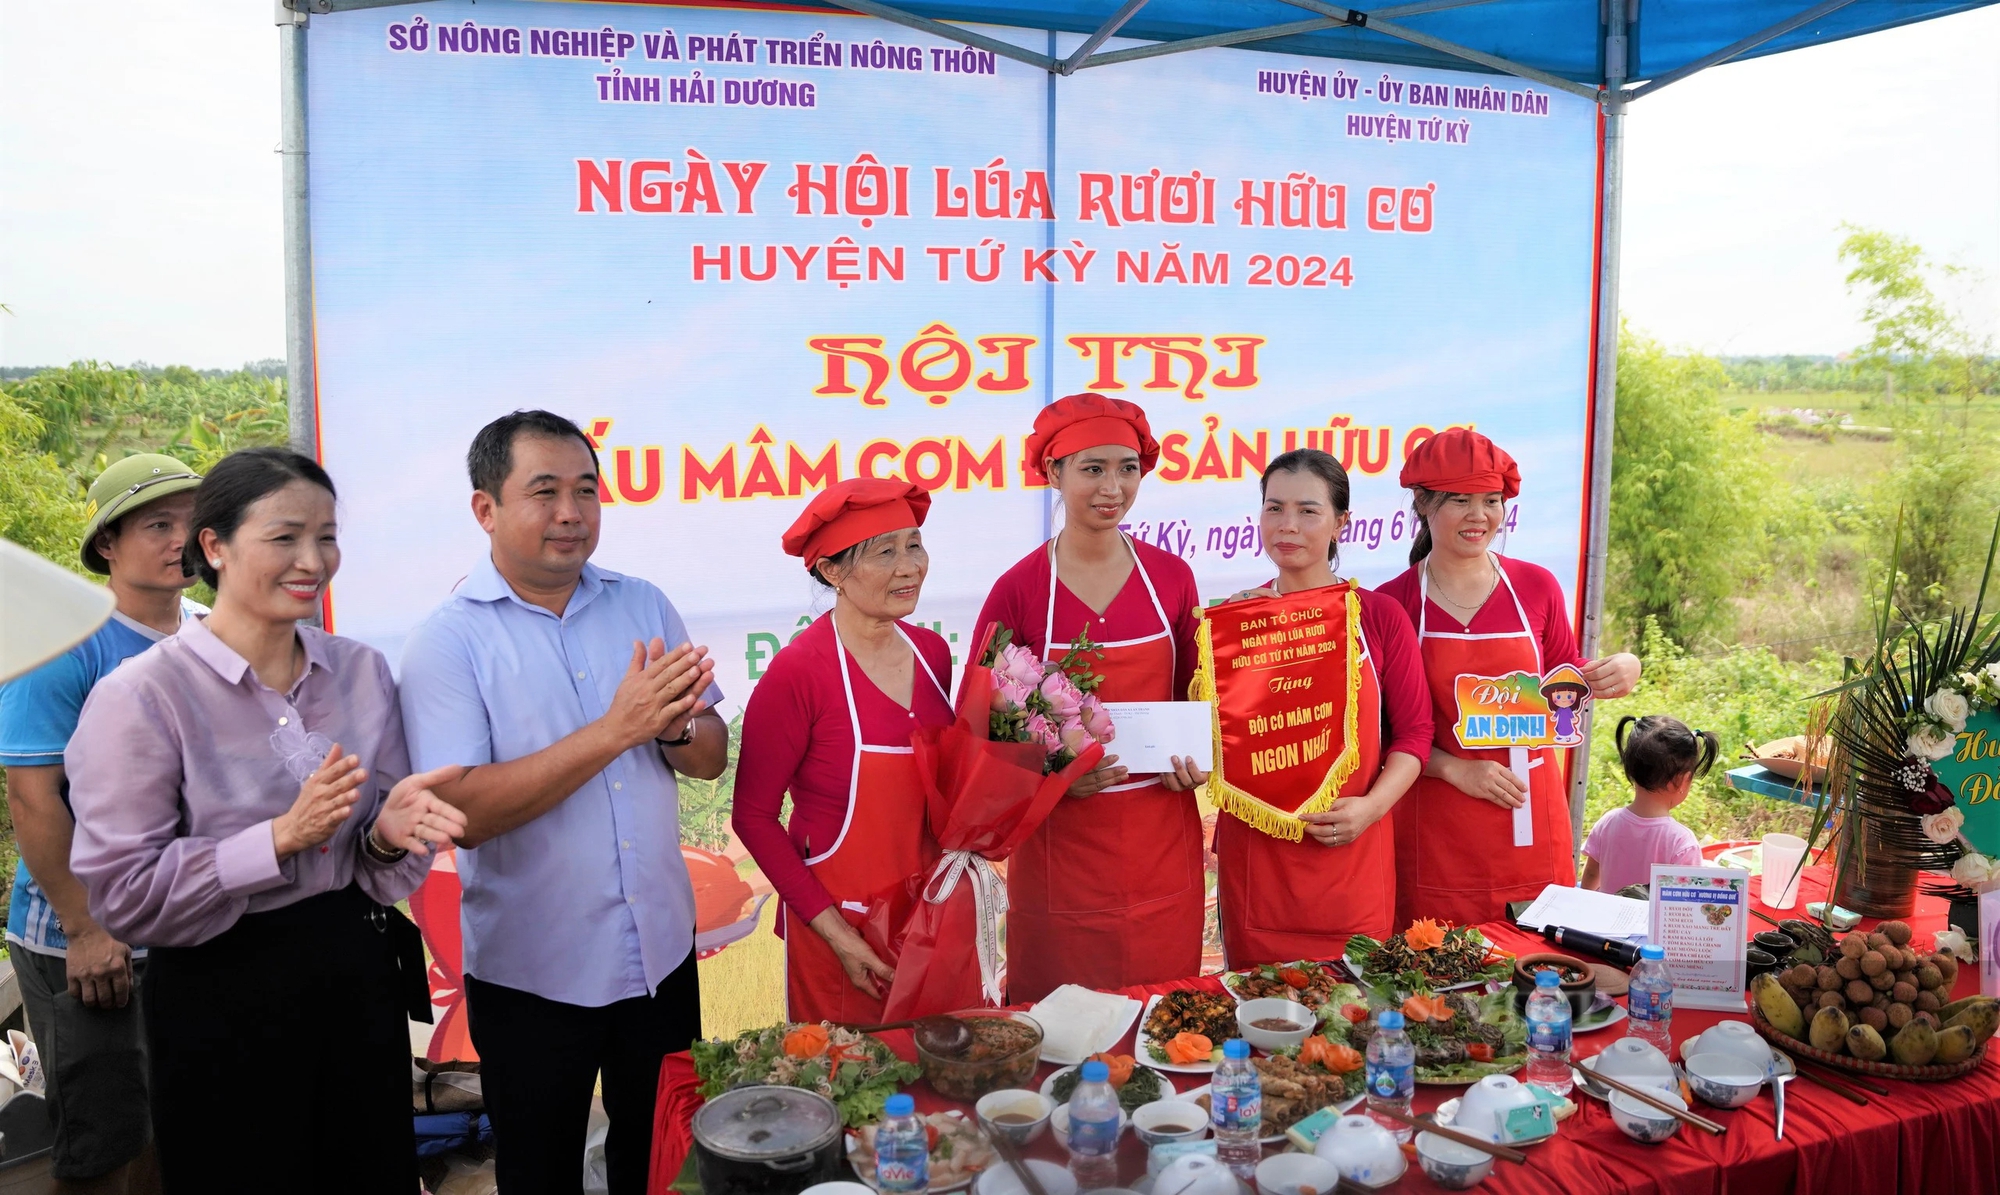 Một huyện của tỉnh Hải Dương, tổ chức ngày hội cho cây lúa, con rươi, Bộ trưởng Bộ NNPTNT đến tận nơi xem- Ảnh 10.